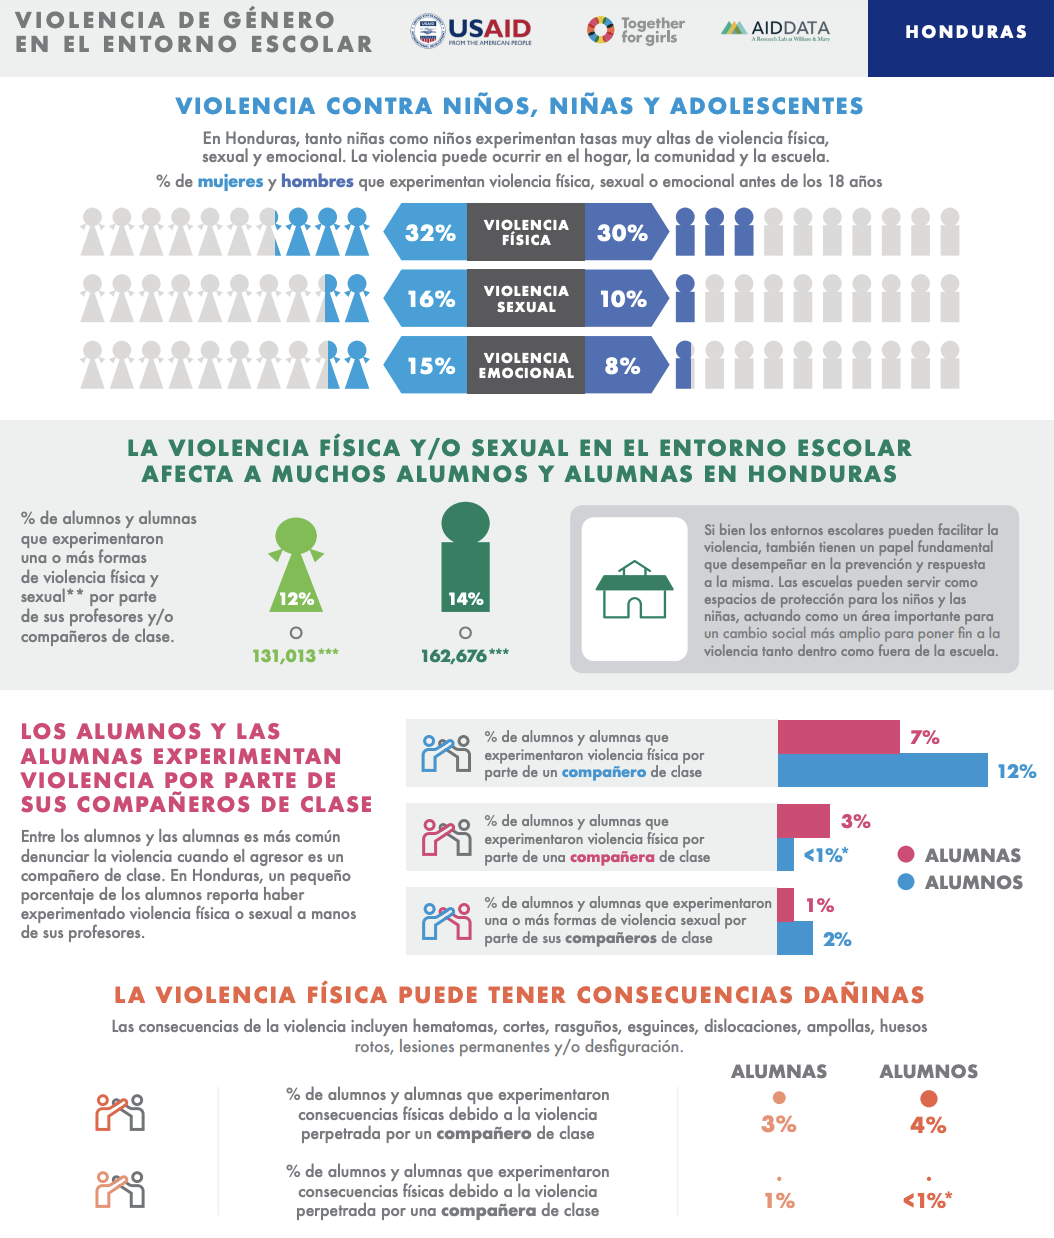 Violencia de género en el entorno escolar de El Salvador